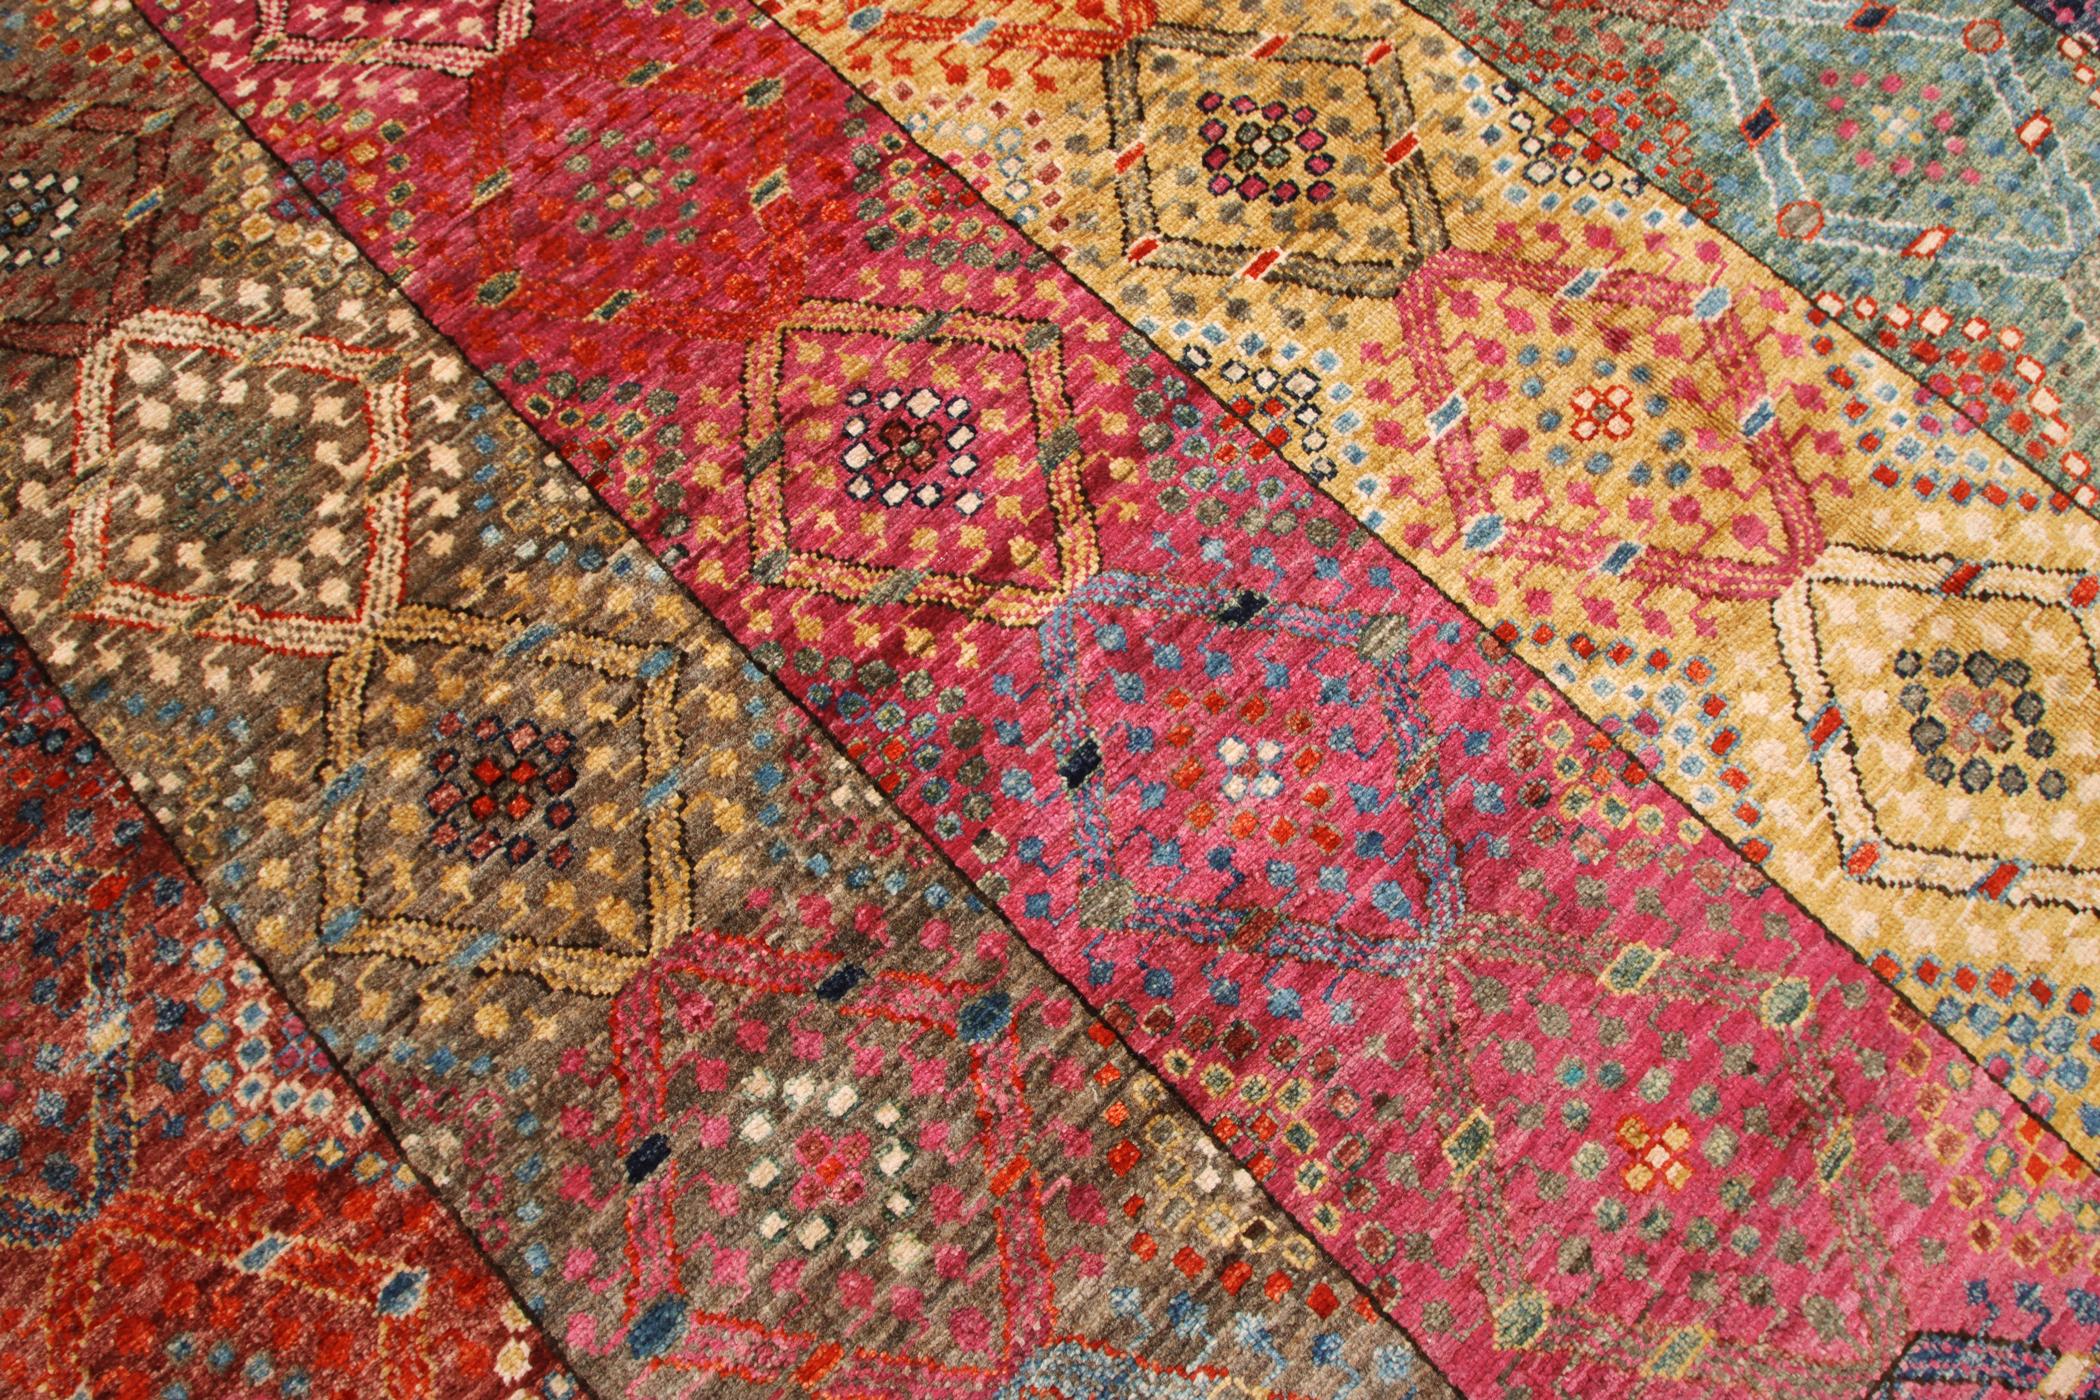 Schöner handgefertigter Teppich von turkmenischen Knüpfern in Afghanistan mit natürlichen Farbstoffen und handgesponnener Wolle.
Teppich im Shasavan-Stil.